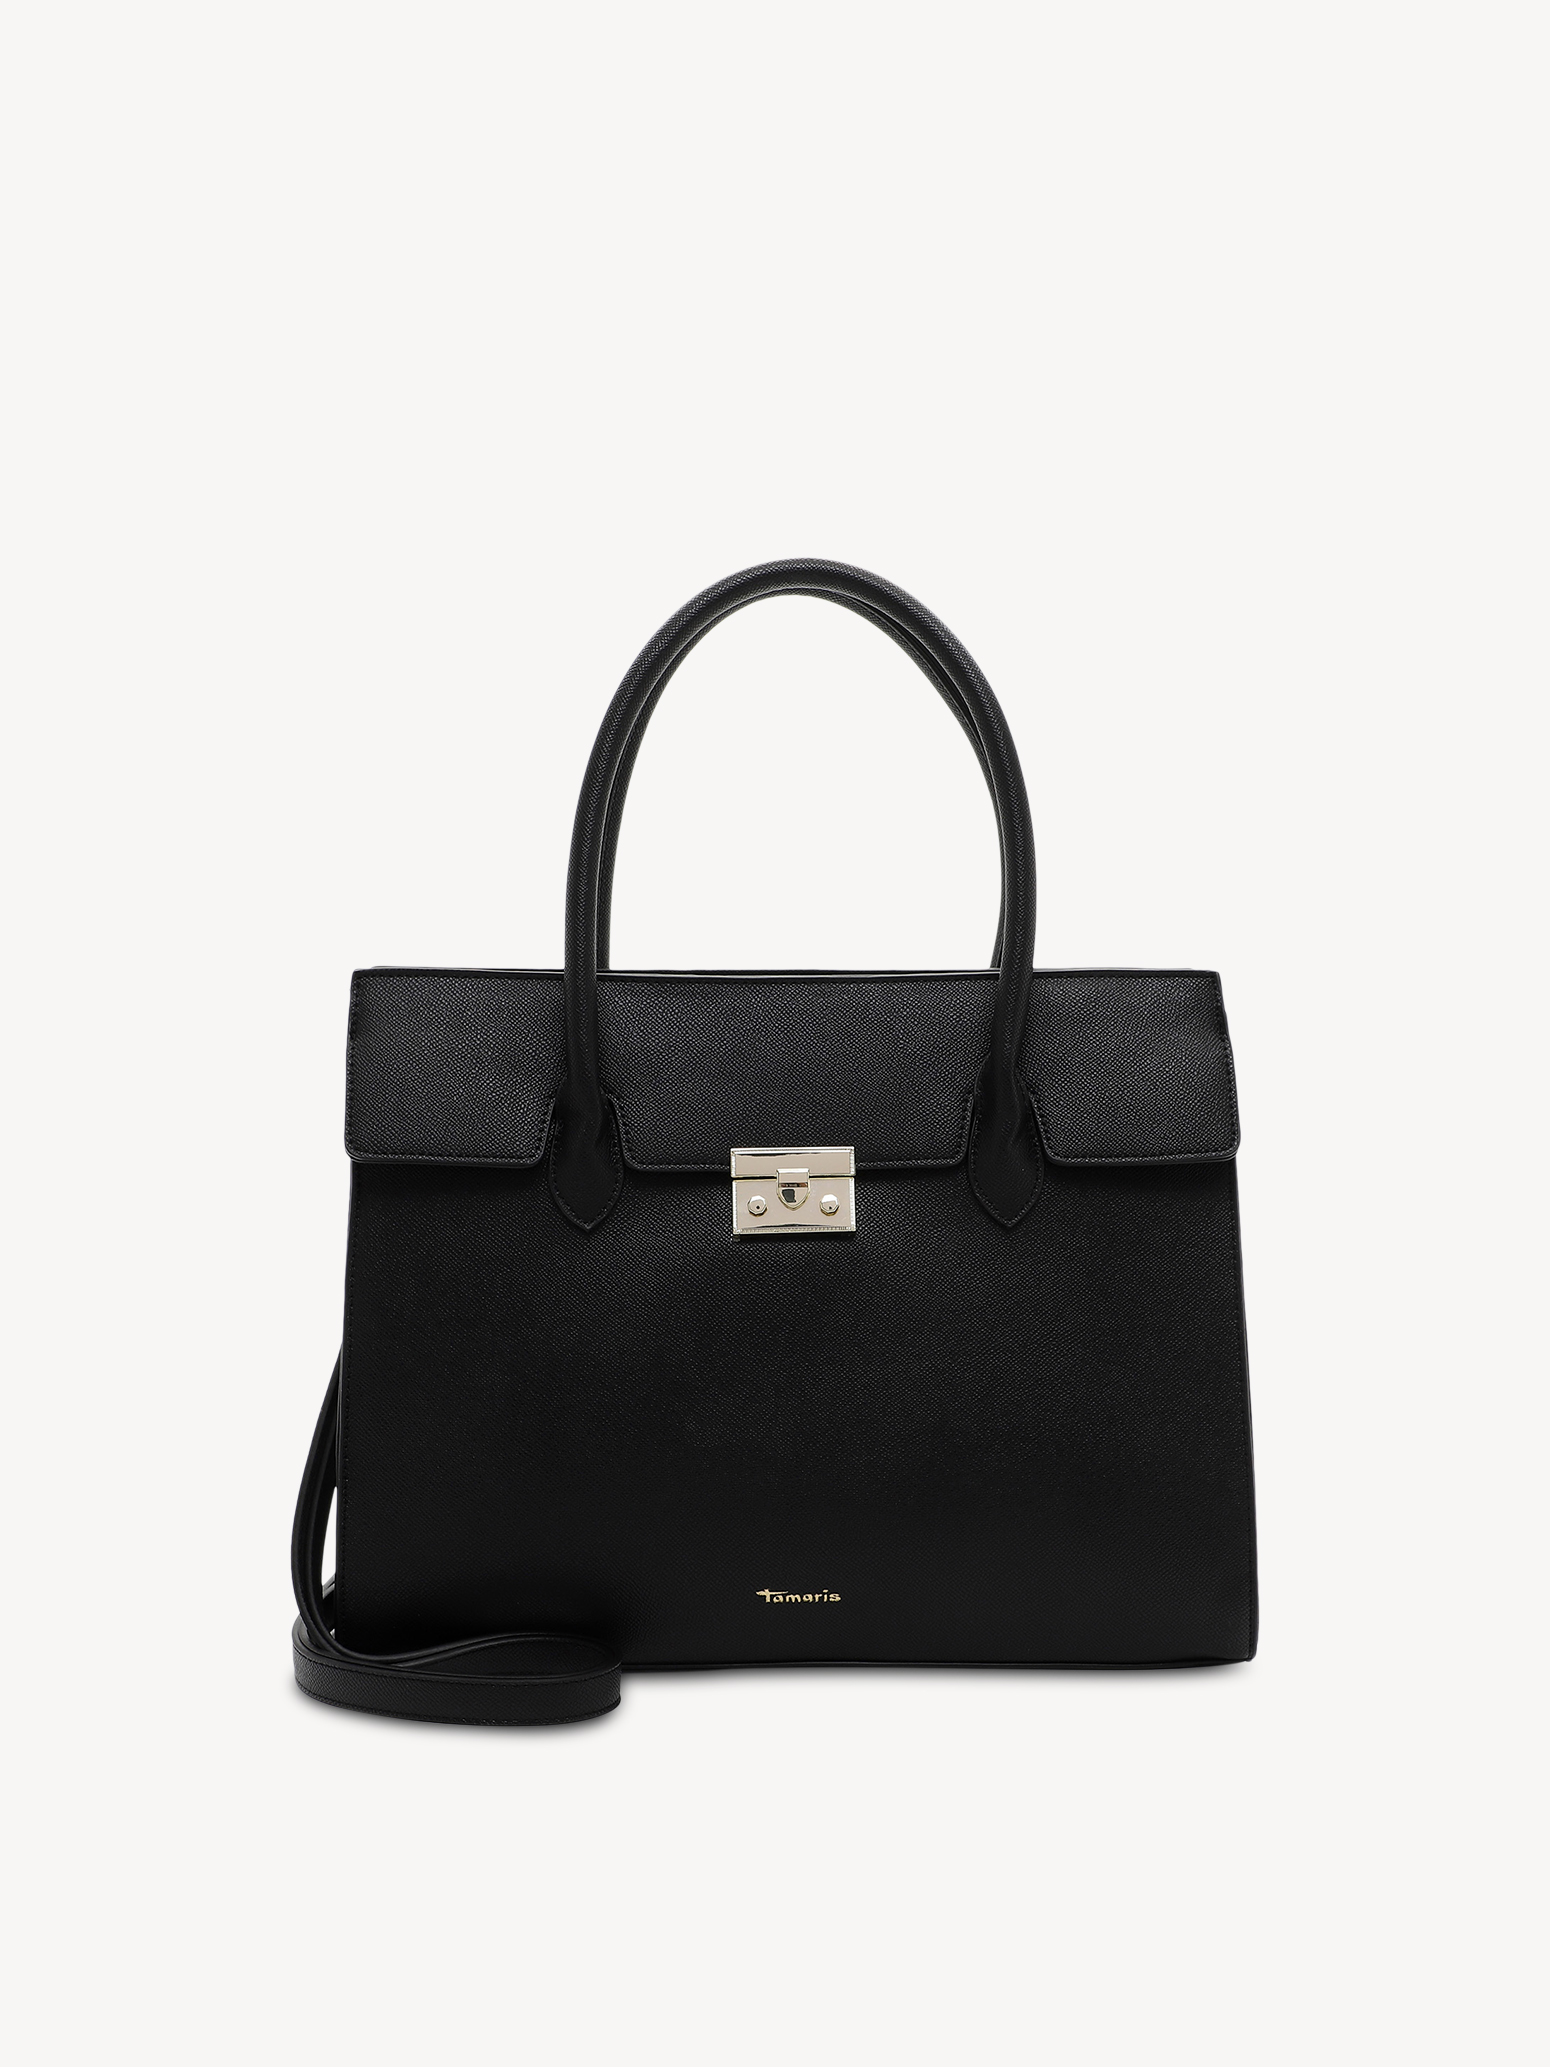 Shopping bag - black 32913-100: Buy Tamaris Shopping bags online!